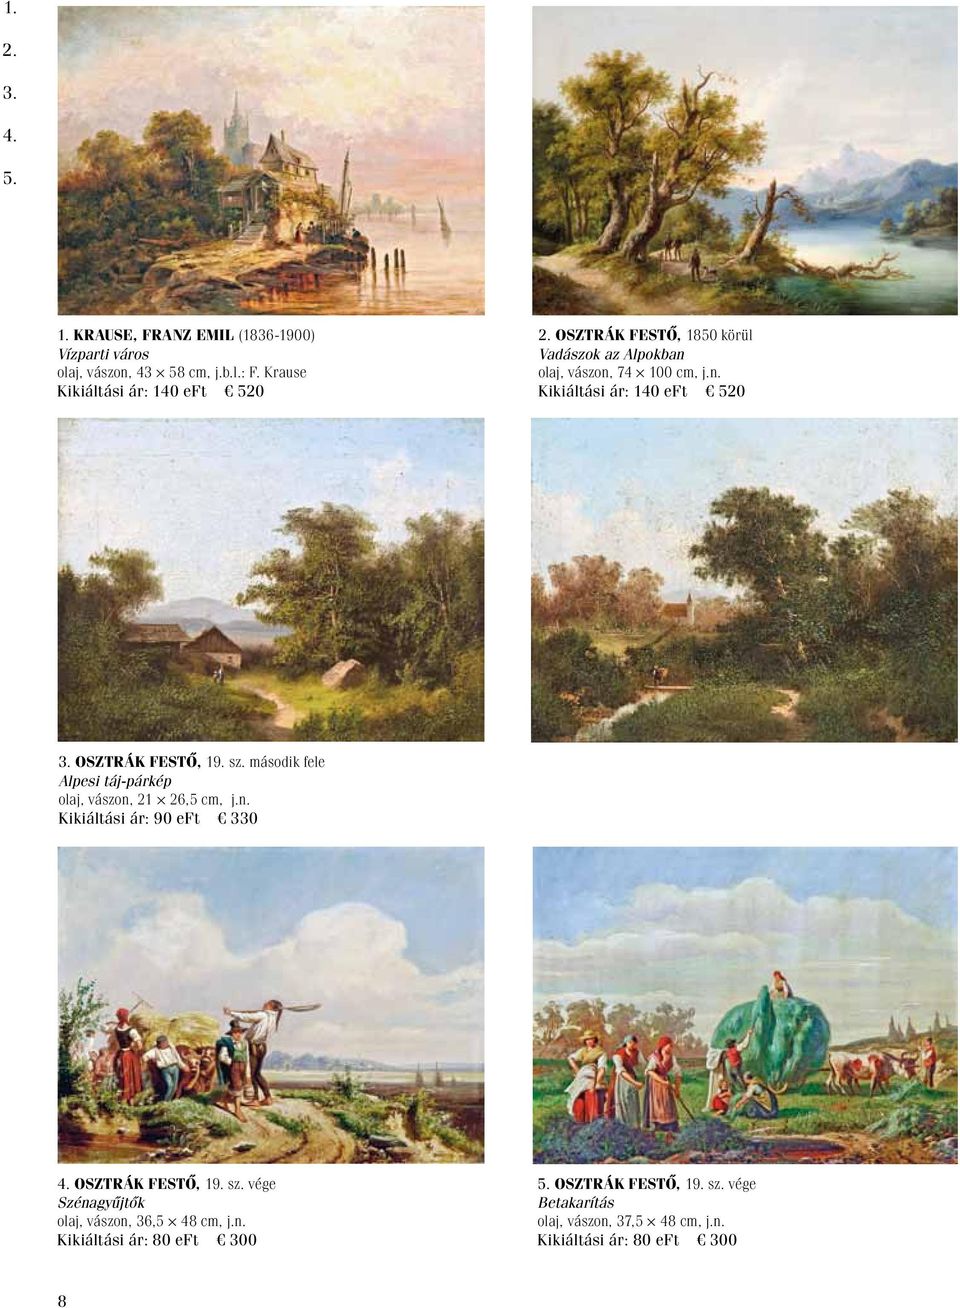 Osztrák festő, 19. sz. második fele Alpesi táj-párkép olaj, vászon, 21 26,5 cm, j.n. Kikiáltási ár: 90 eft 330 4.